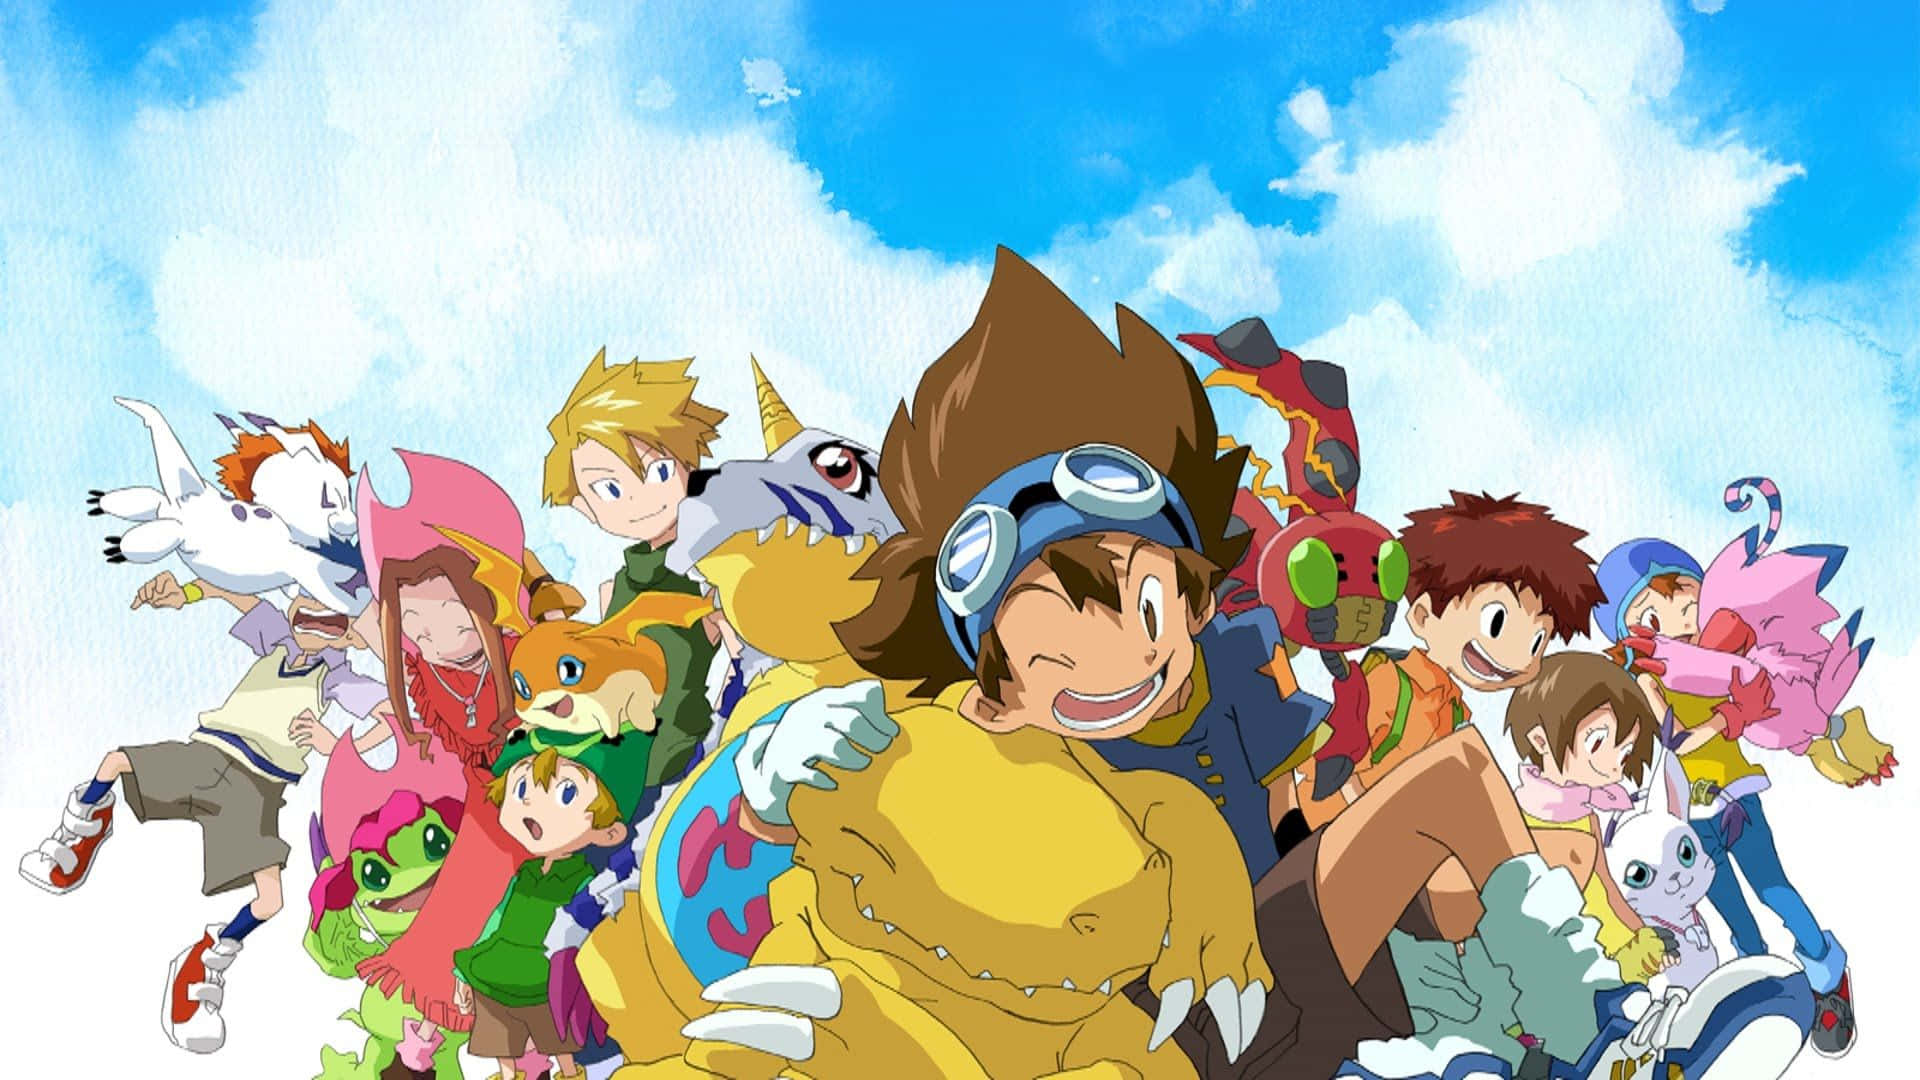 Imagendel Grupo Del Anime Digimon